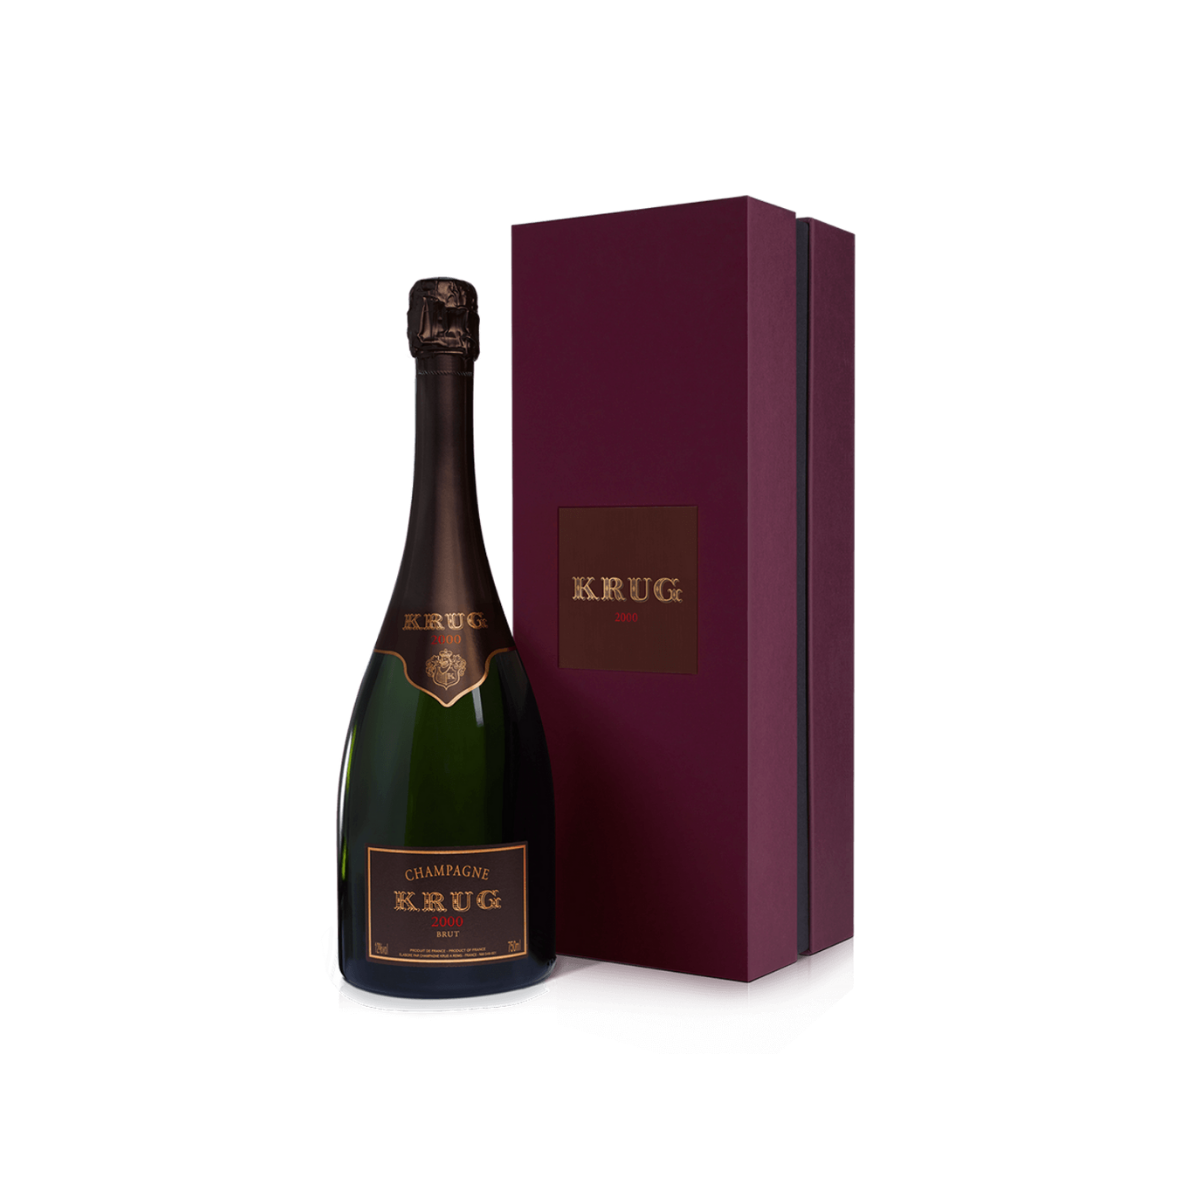 Krug Brut Champagne Sparkling Wine Vintage 2000